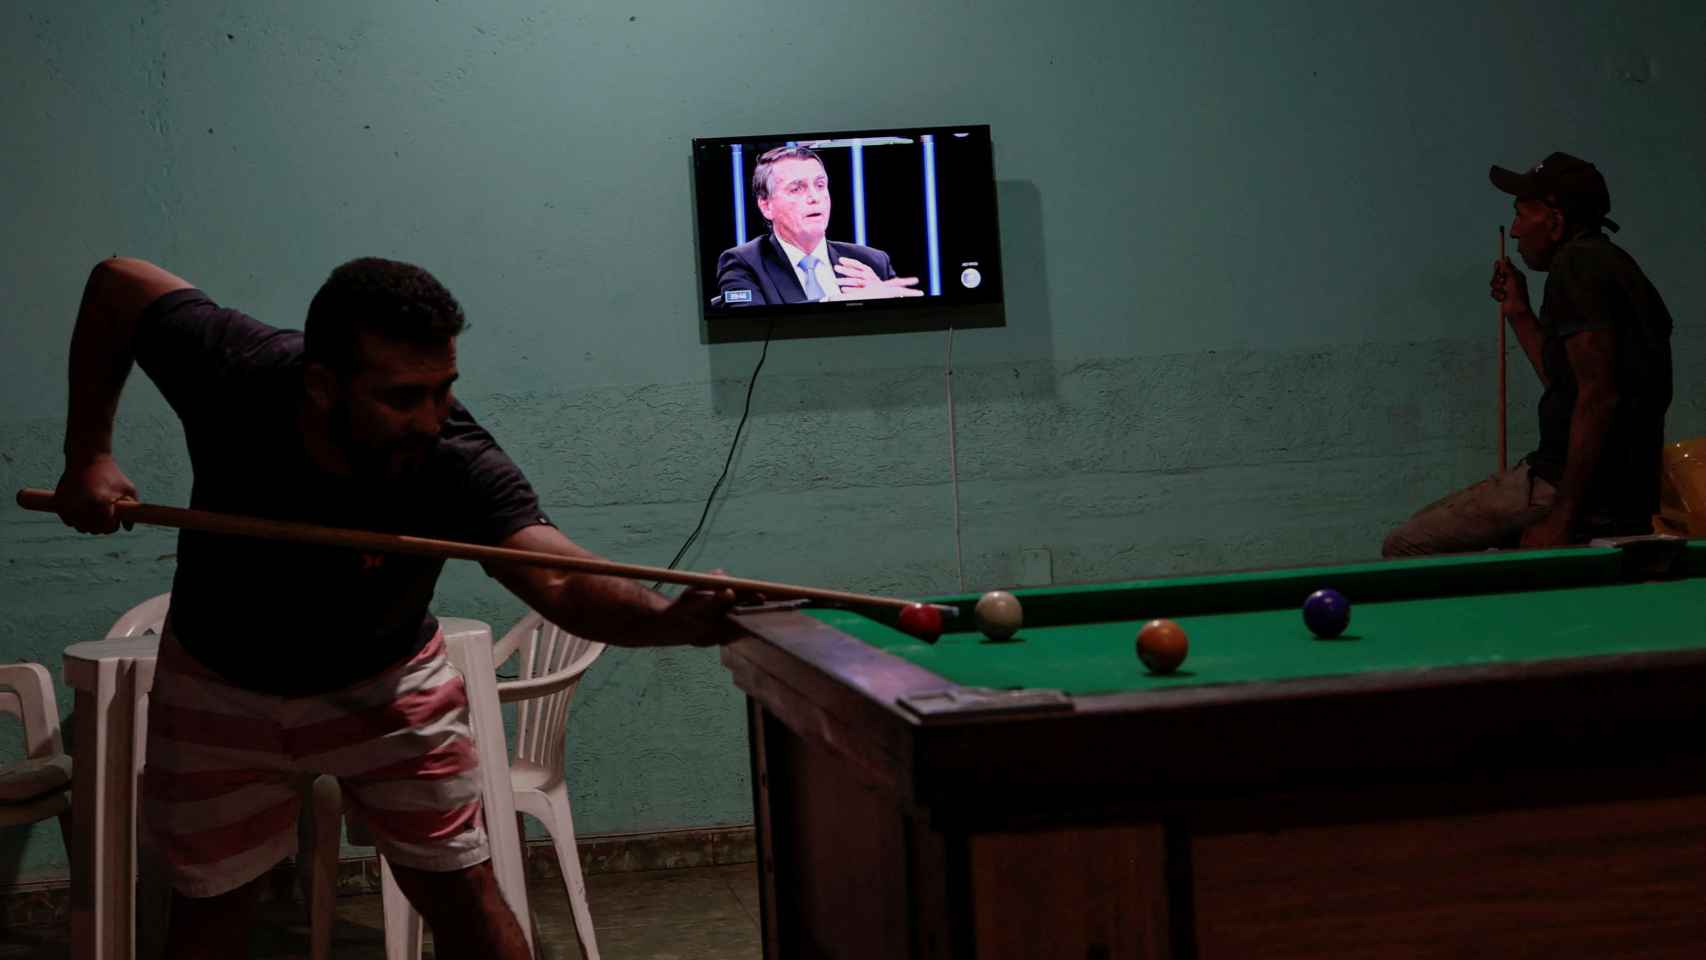 Ciudadanos brasileños juegan al billar mientras Bolsonaro aparece en televisión.